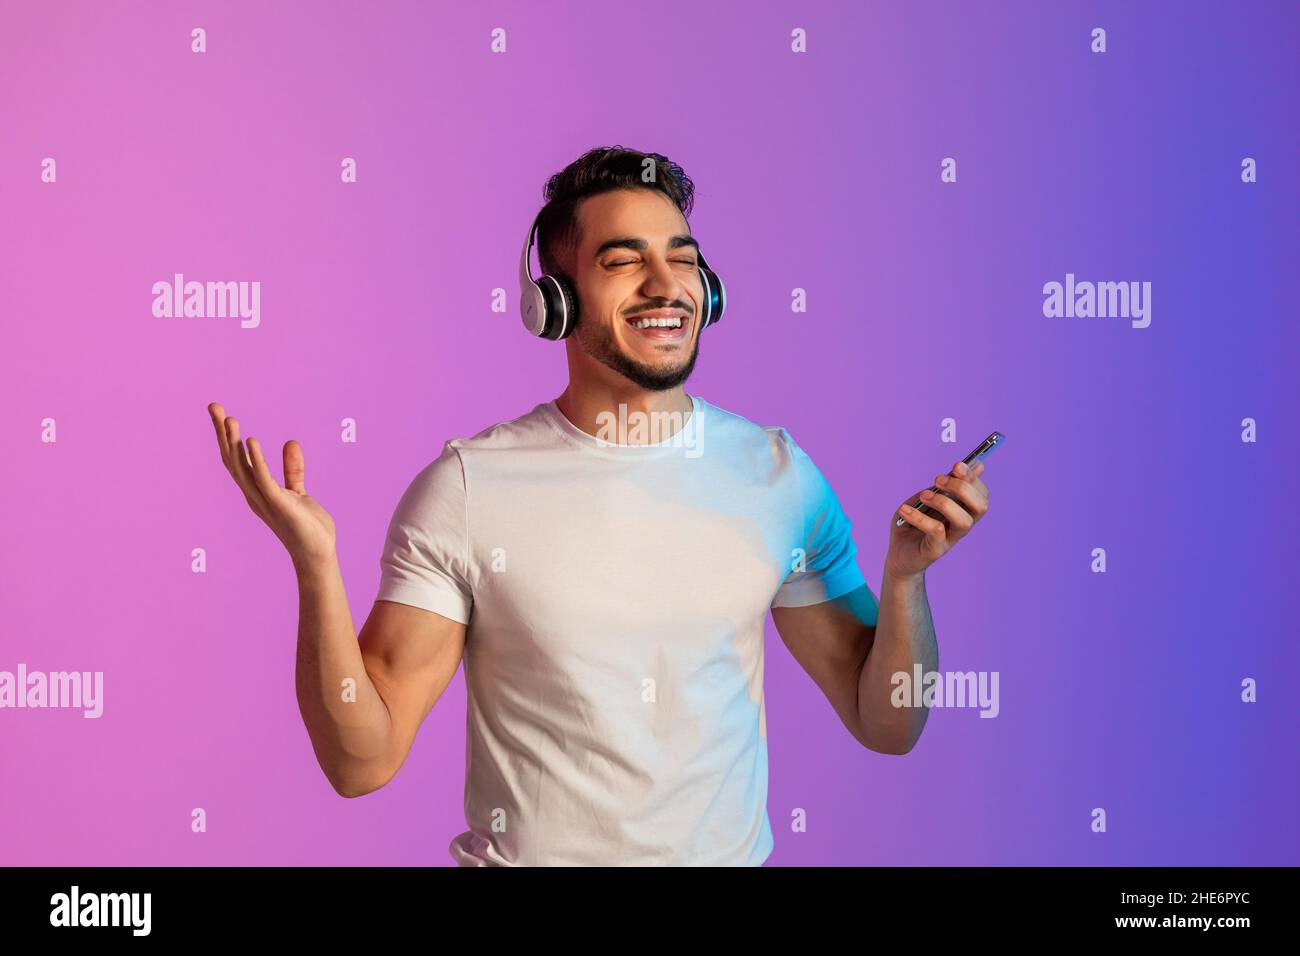 Cooler arabischer Mann, der in Kopfhörern beliebte Lieder hört, die neue mobile Musik-App am Telefon überprüft und sich im Neonlicht entspannt Stockfoto